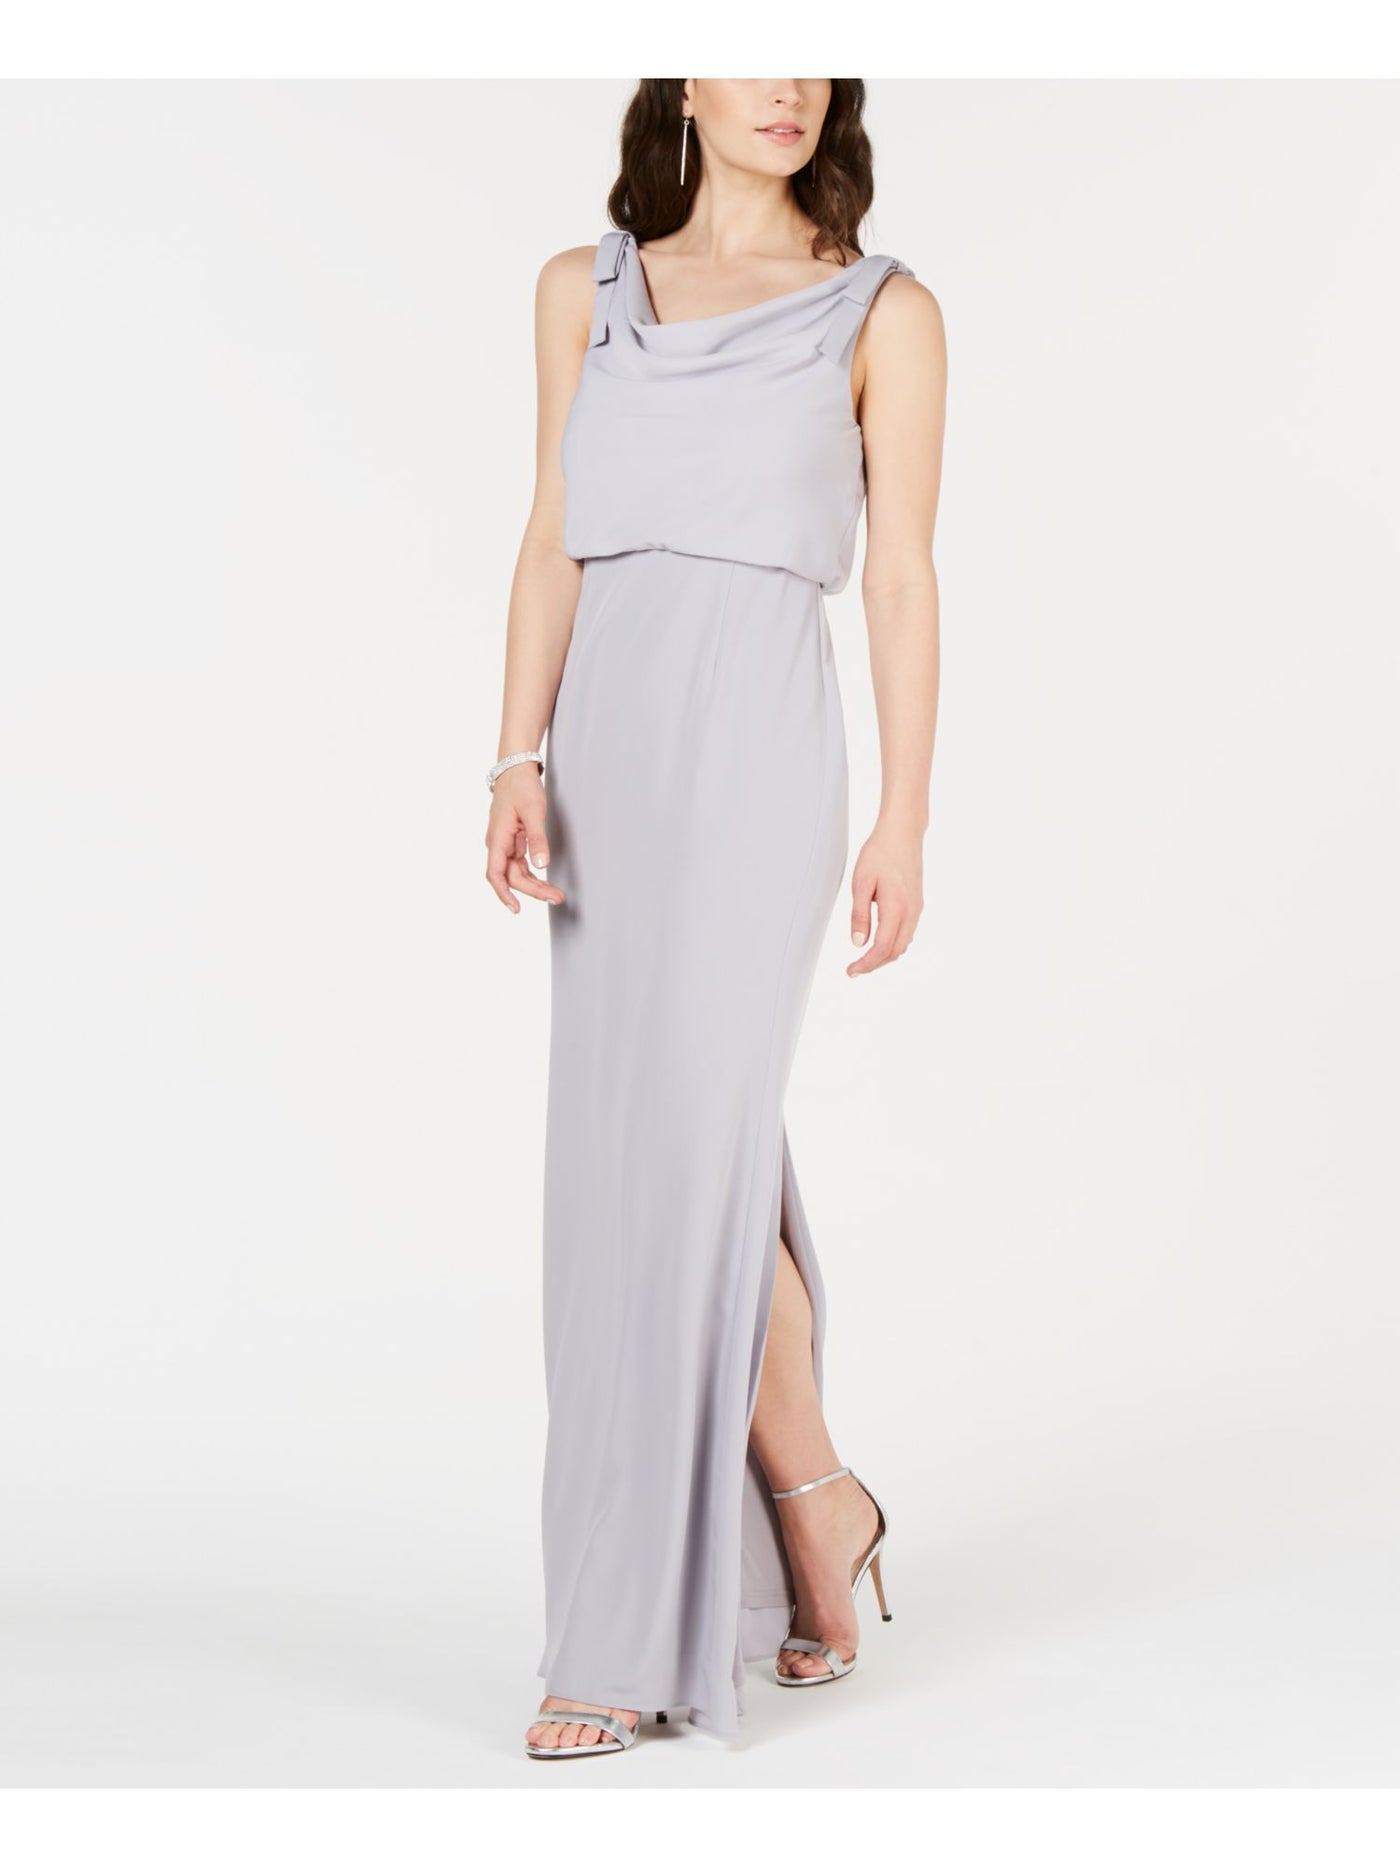 ADRIANNA PAPELL Womens Silver Slitted Sleeveless V Neck Full-Length Formal Blouson Dress 0